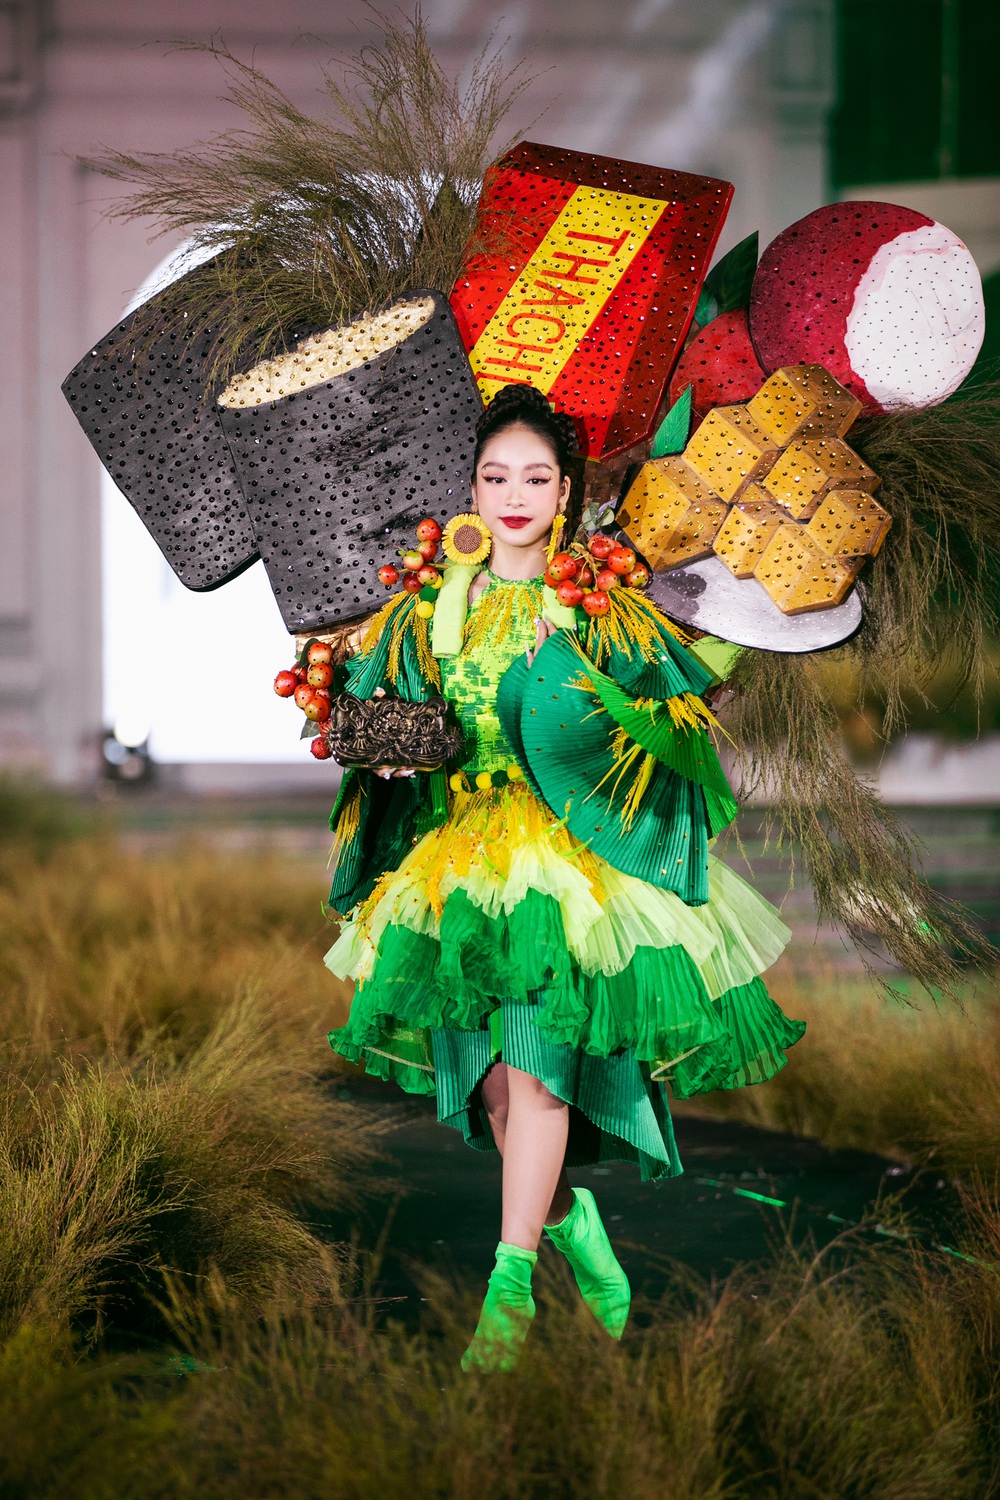 Hoa hậu Tiểu Vy, Bảo Ngọc tỏa sáng trên sàn diễn thời trang Ký họa quê hương - Ảnh 3.